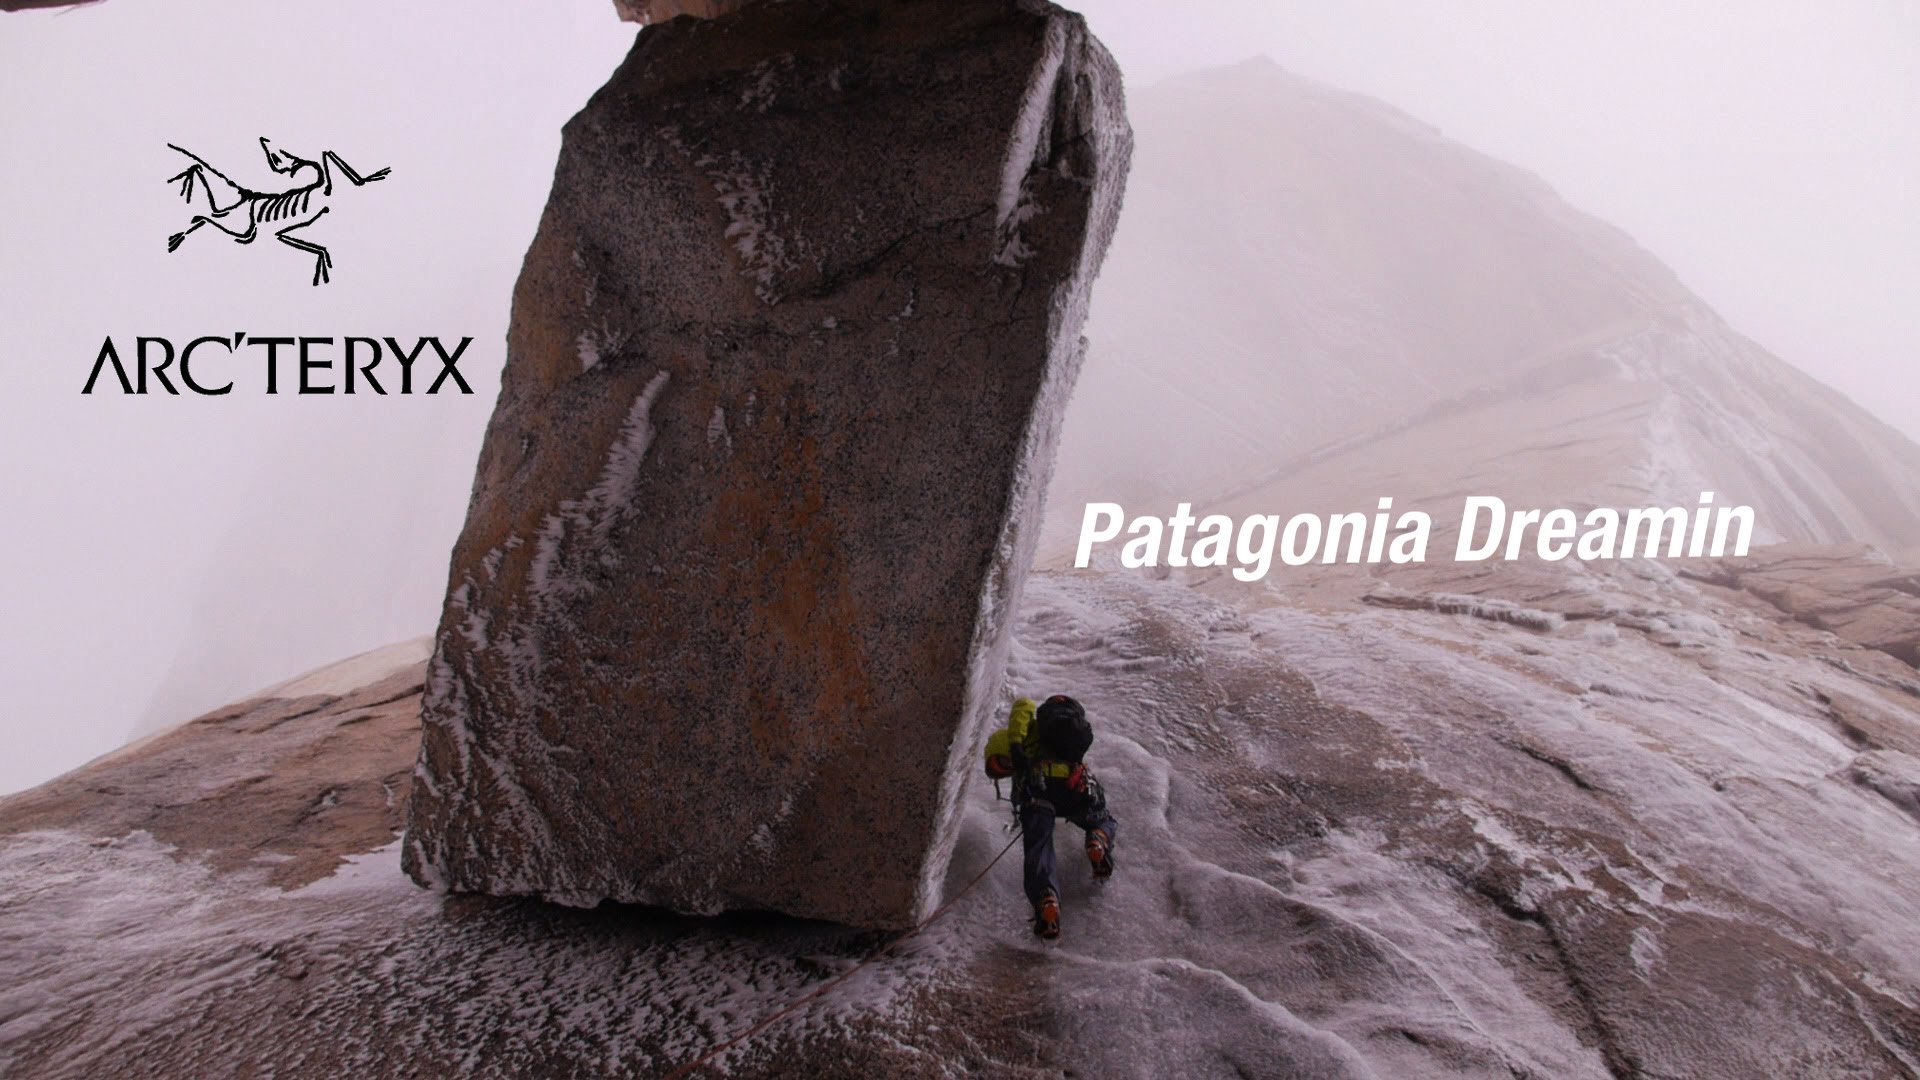 Patagonia dreamin